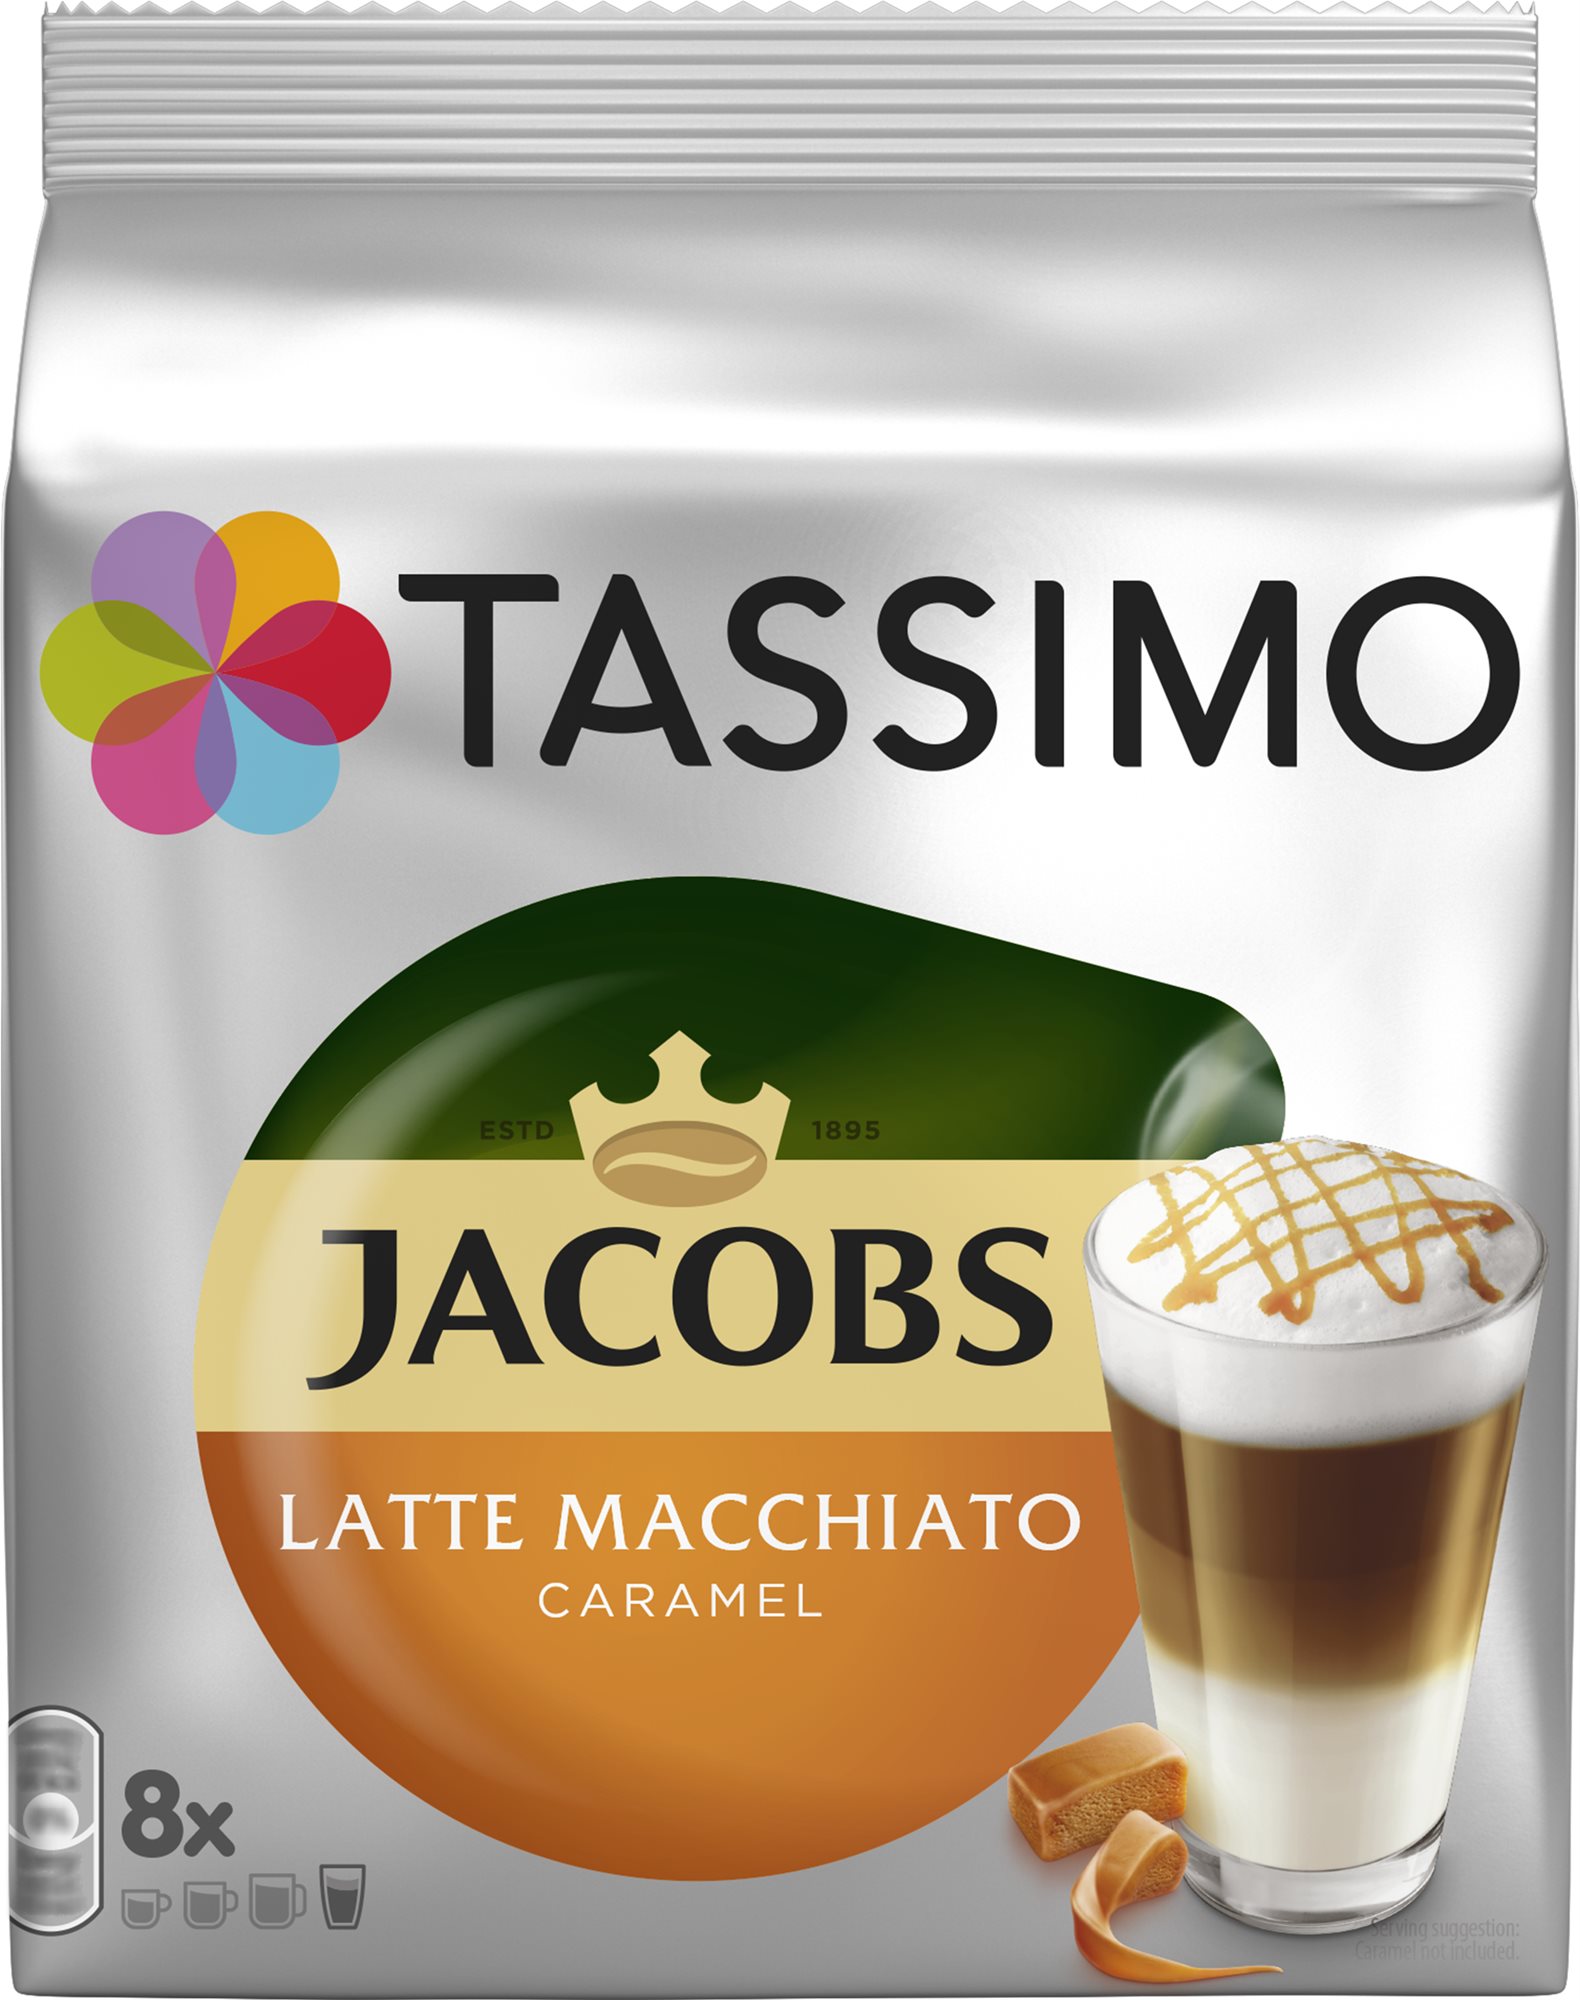 TASSIMO Jacobs Latte Macchiato Caramel 8 adag